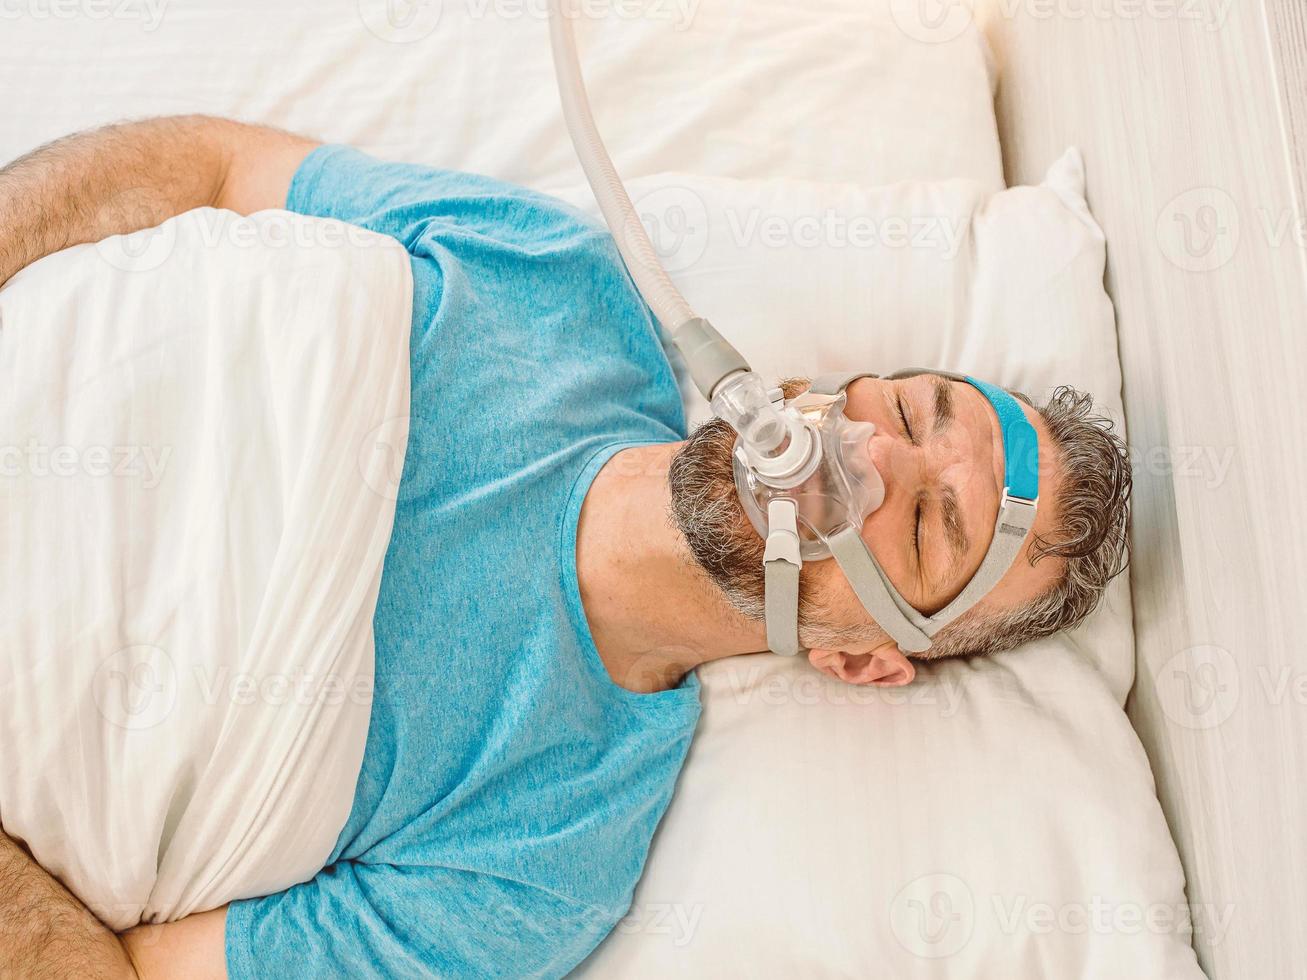 Schlafender Mann mit chronischen Atemproblemen erwägt die Verwendung der CPAP-Maschine im Bett. Gesundheitswesen, obstruktive Schlafapnoe-Therapie, CPAP, Schnarchkonzept foto